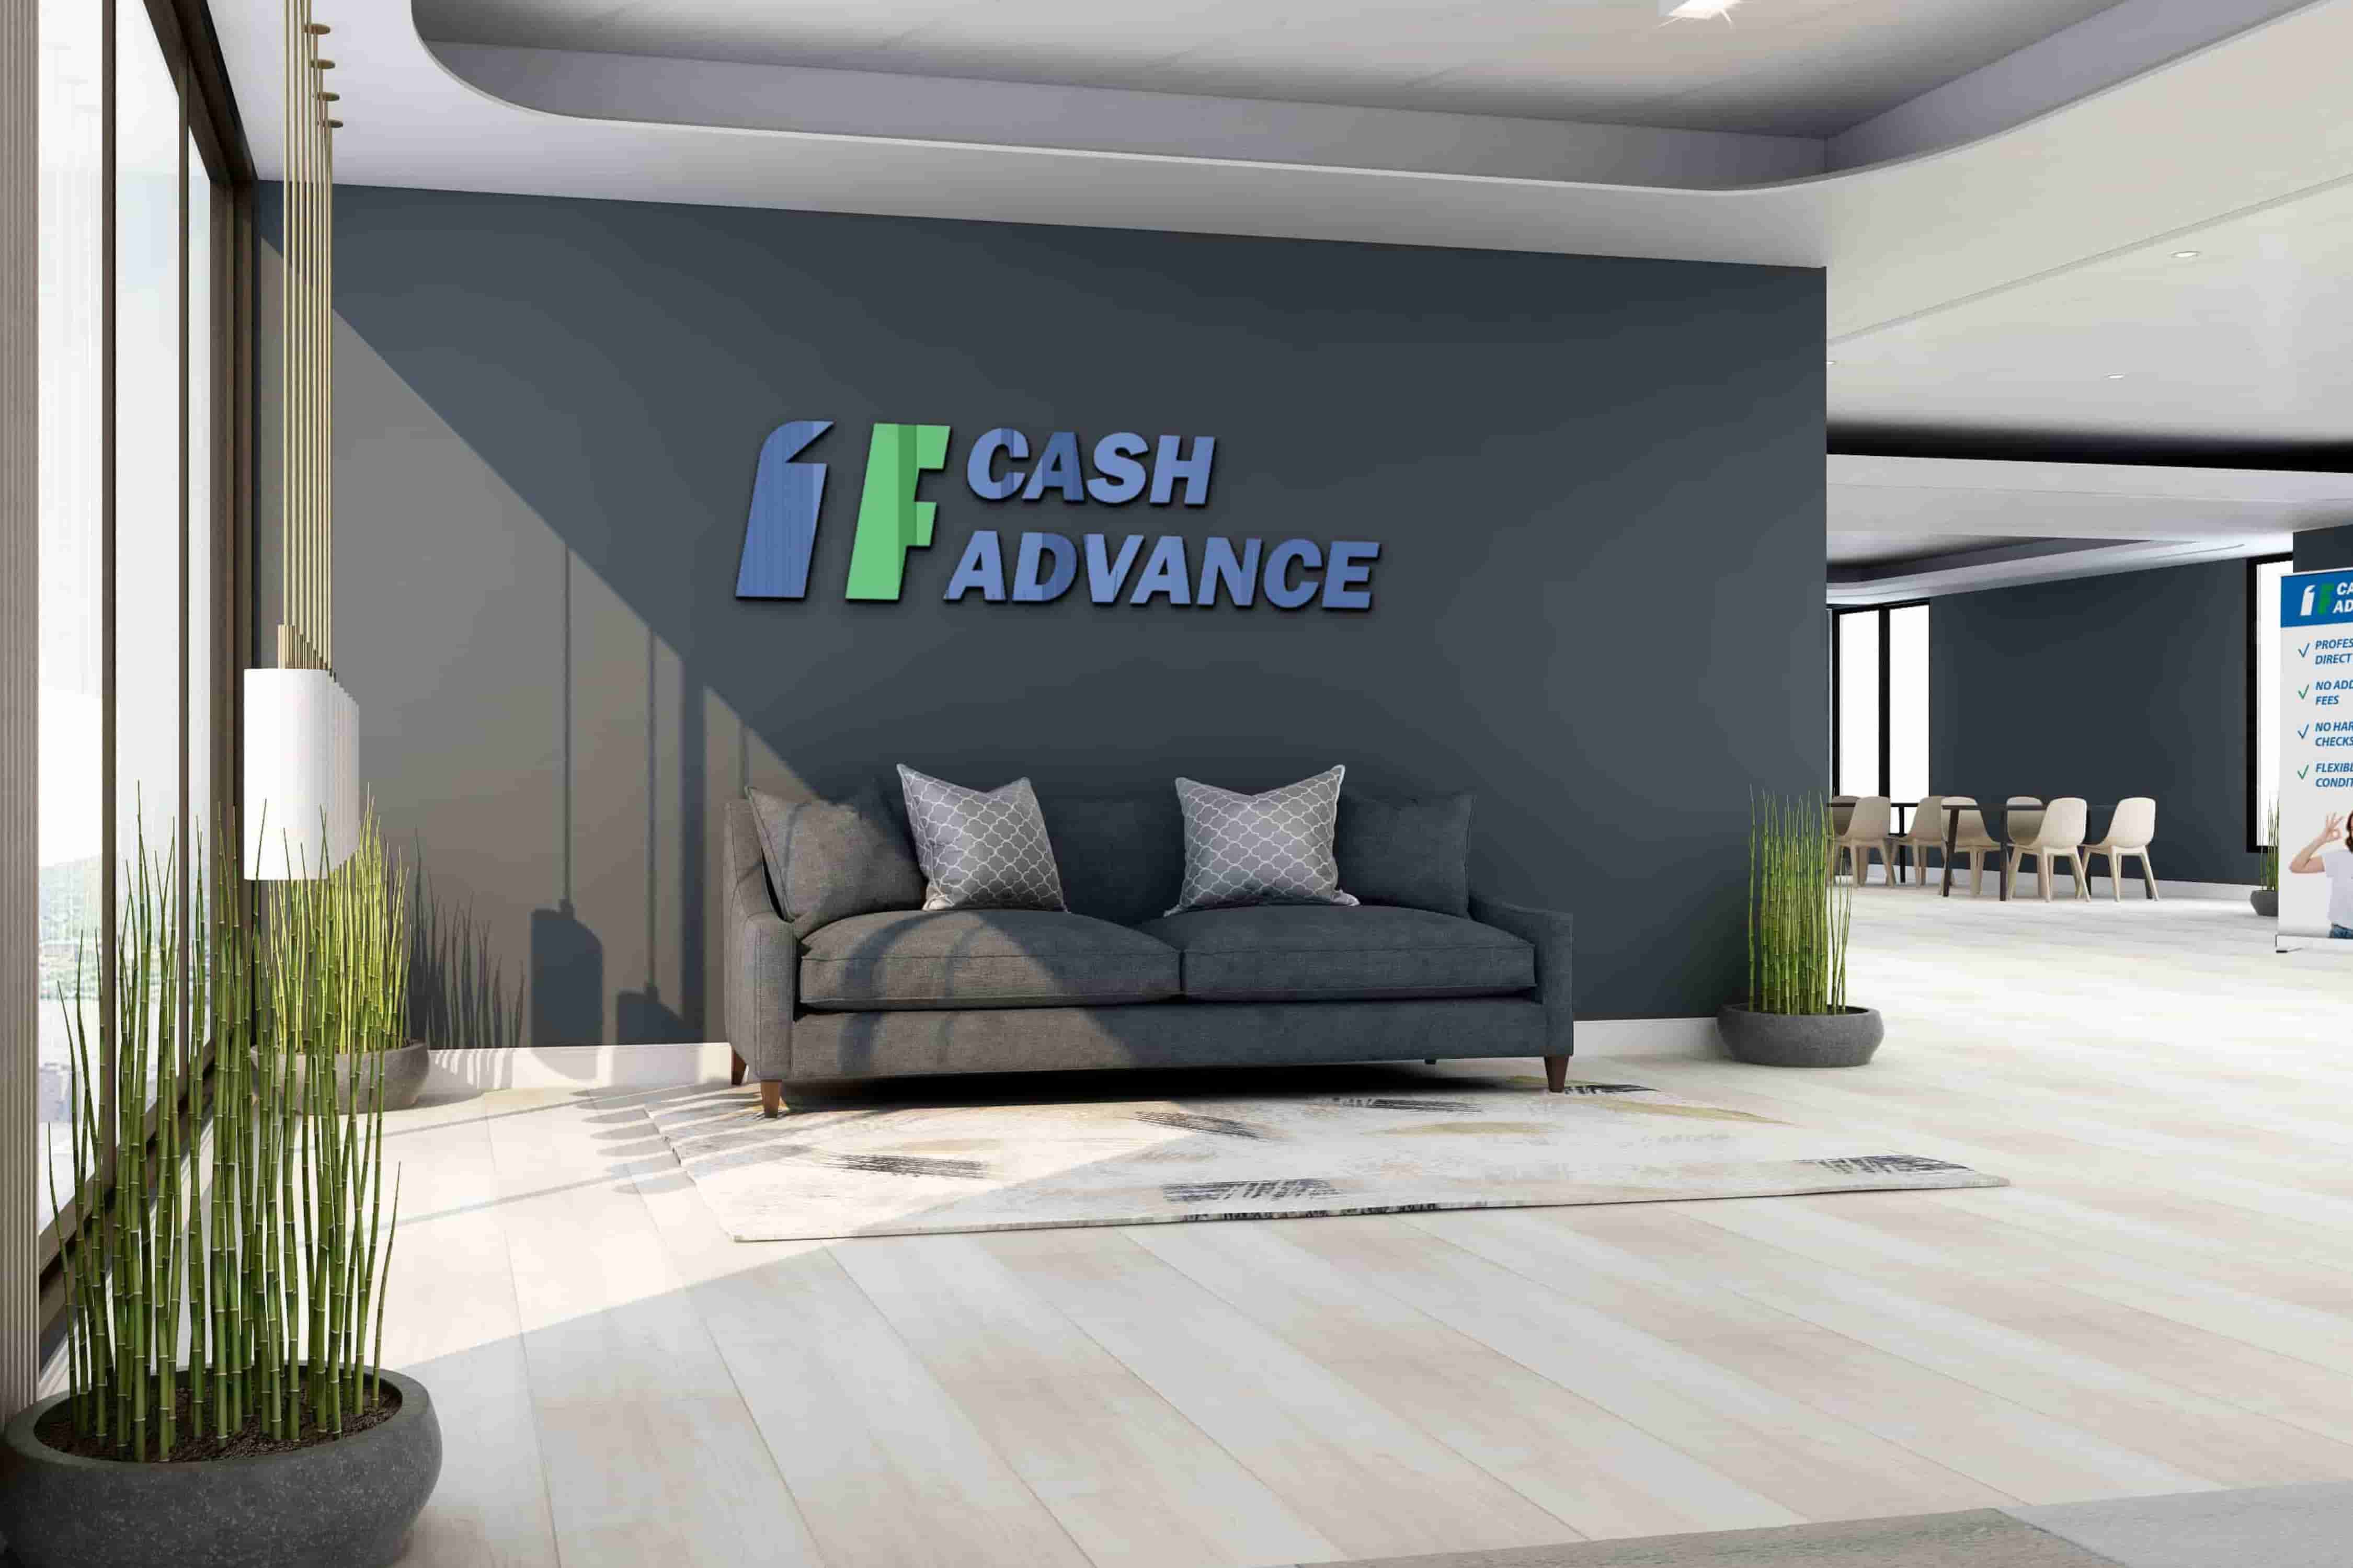 Cash advance in Vancouver, WA